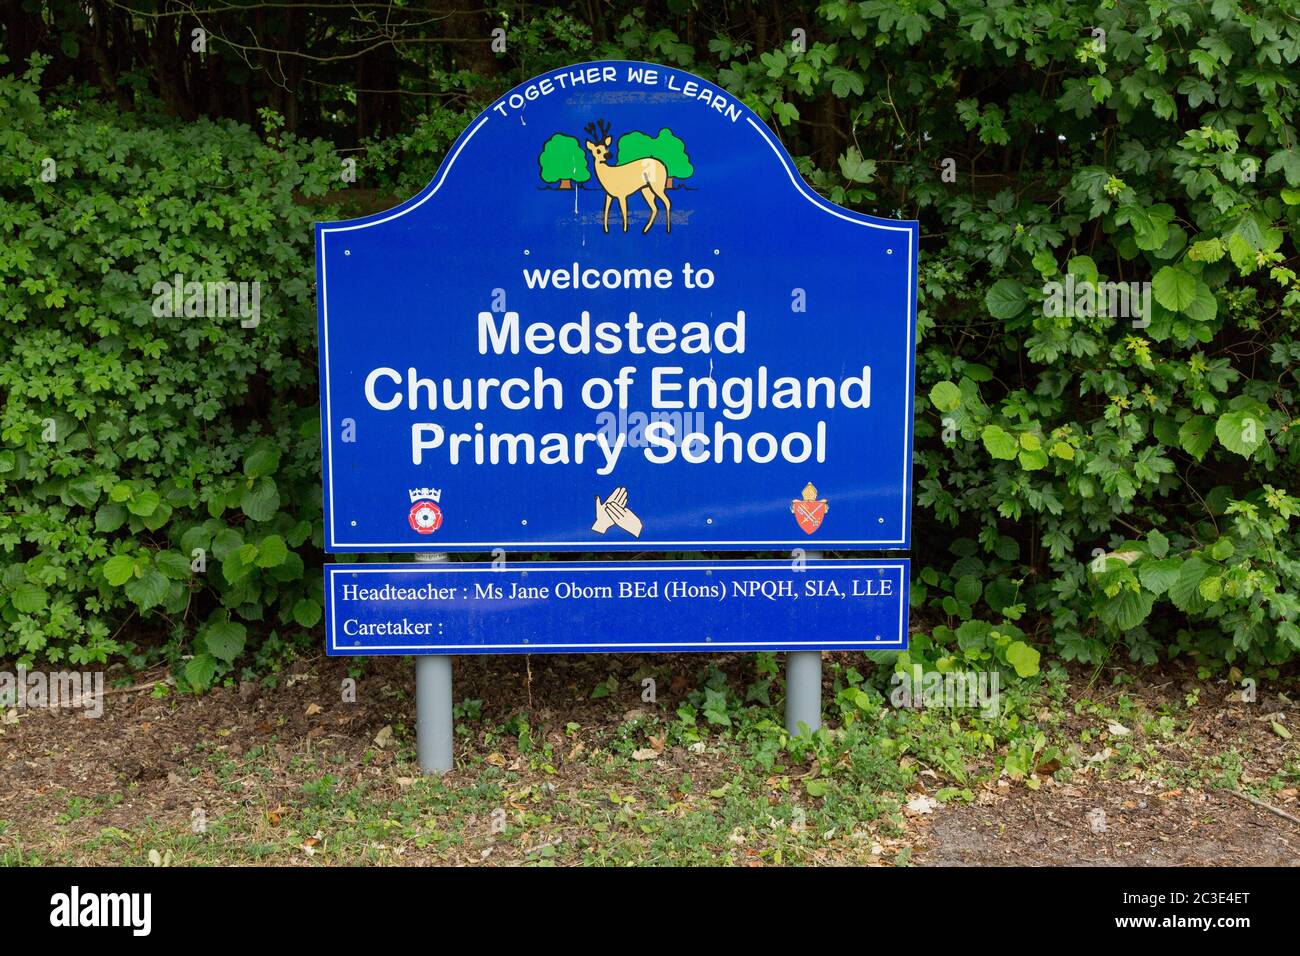 Medstead Church of England Primary School Zeichen, Medstead, England, Vereinigtes Königreich. Stockfoto